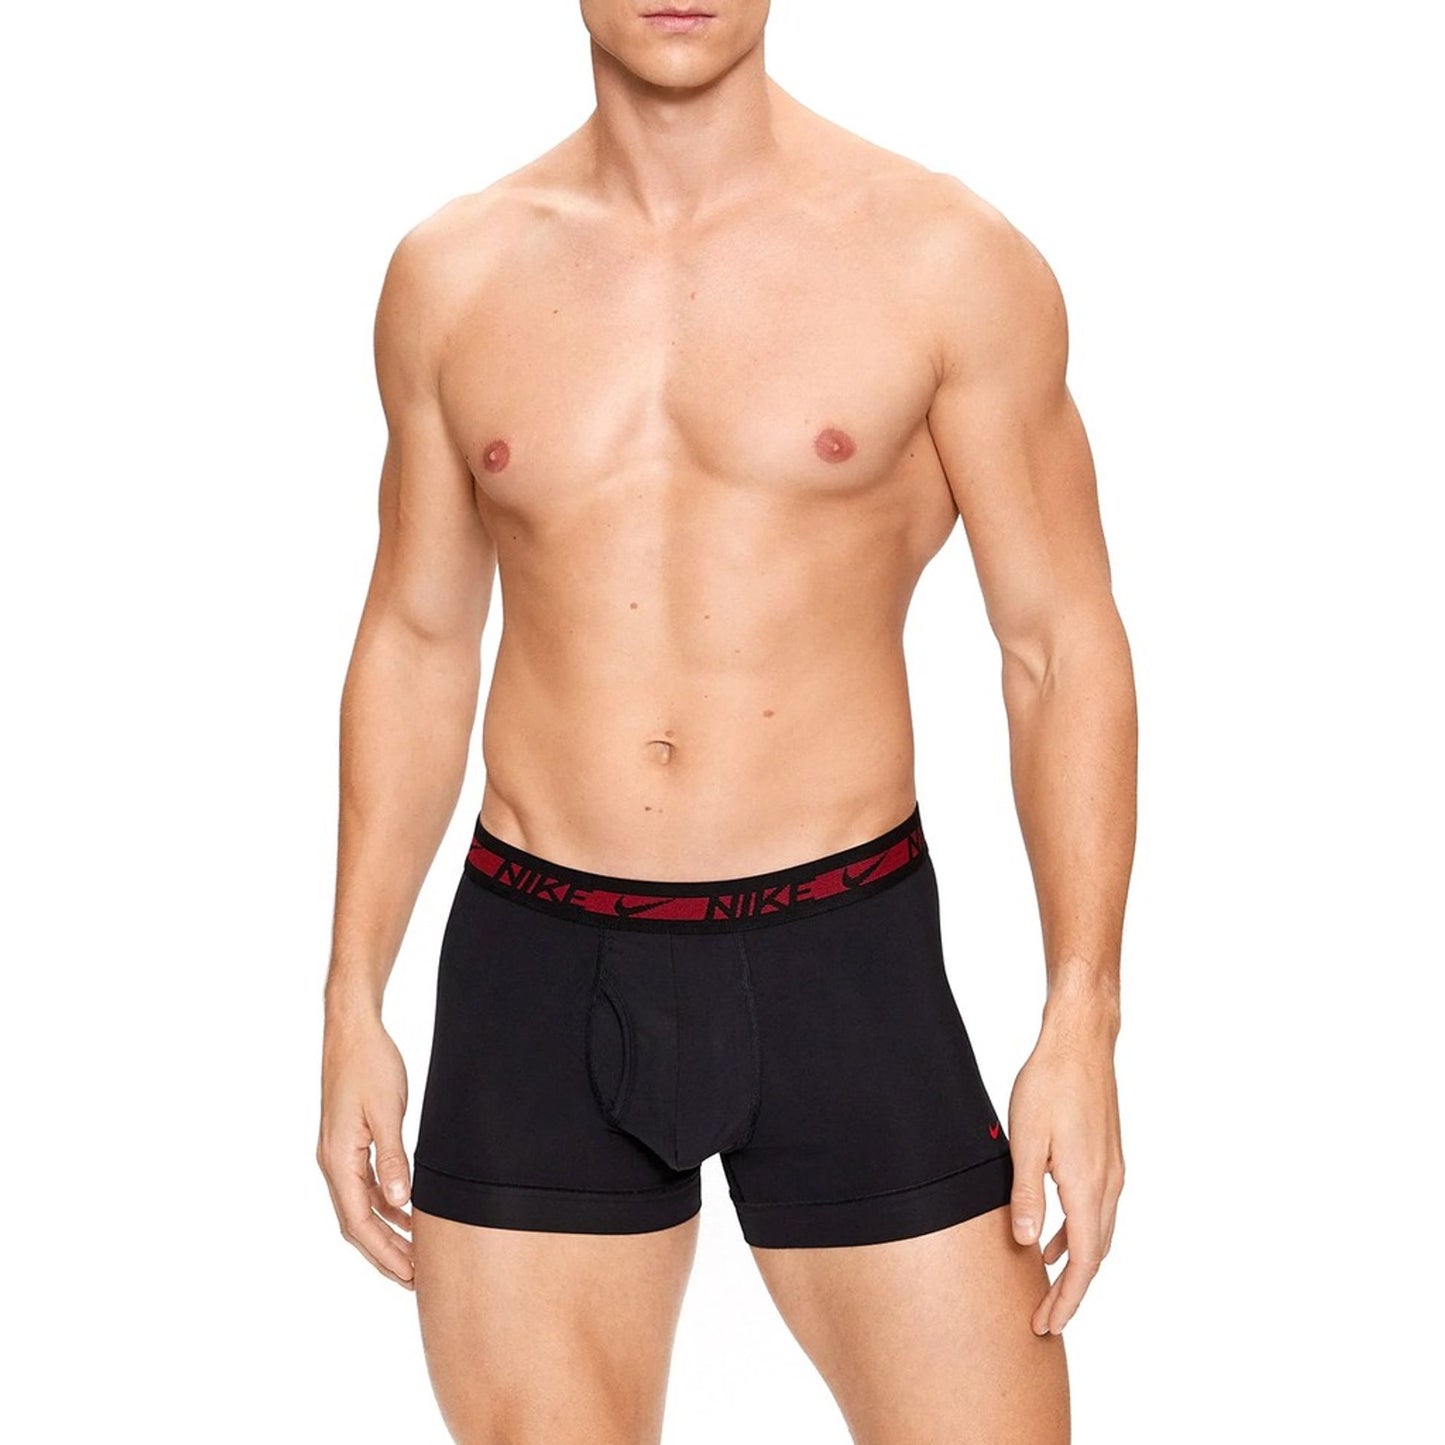 Nike boxer shorts 